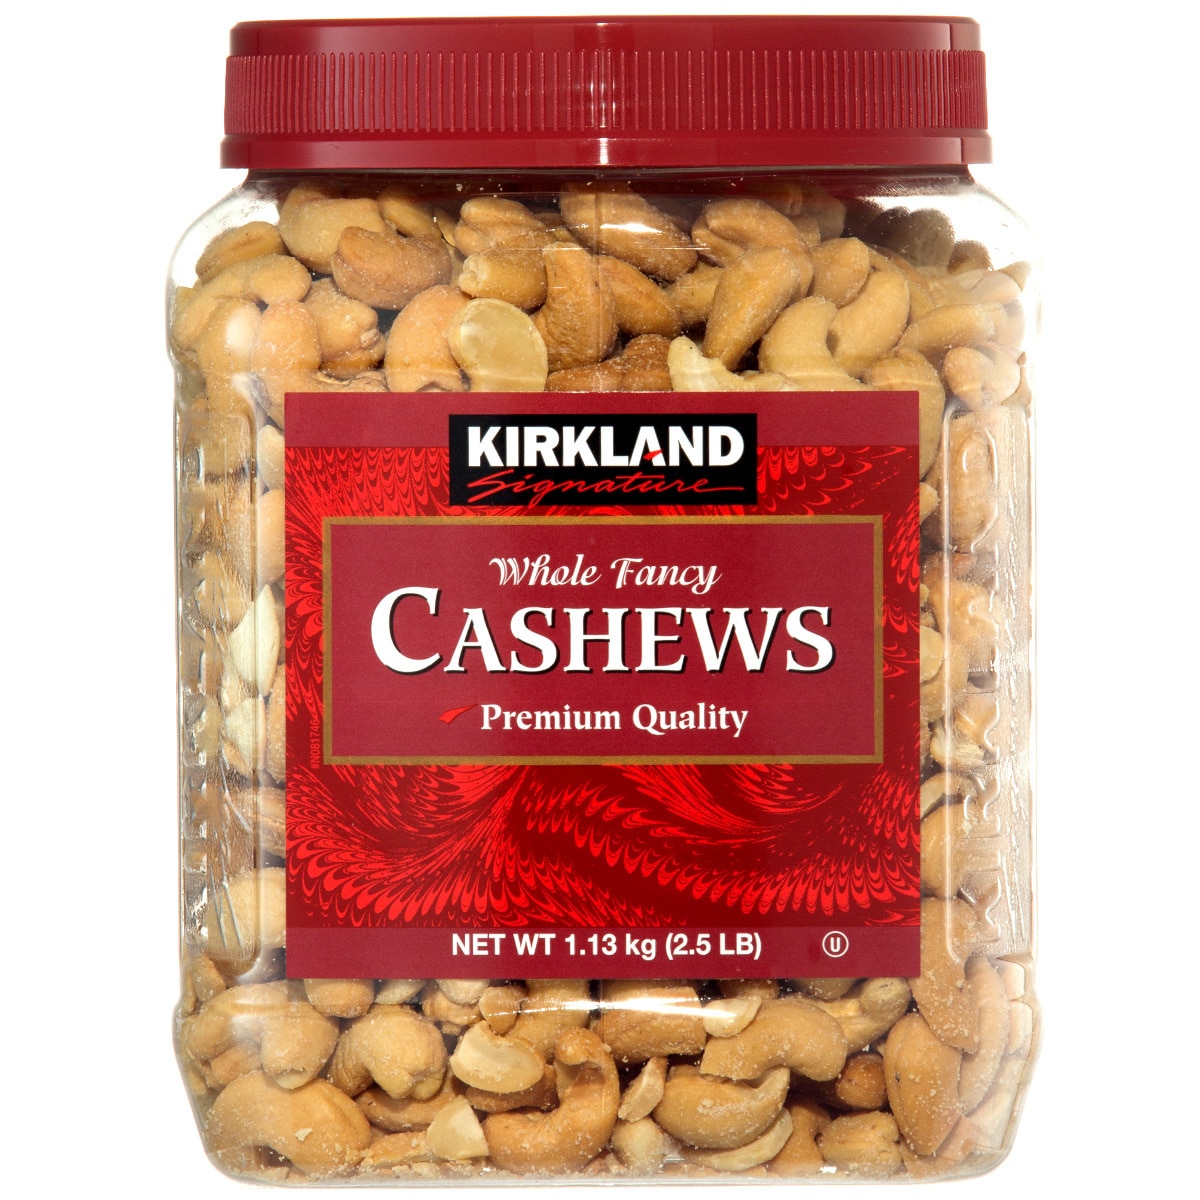 Kirkland Signature Whole Fancy Cashews 1.13kg